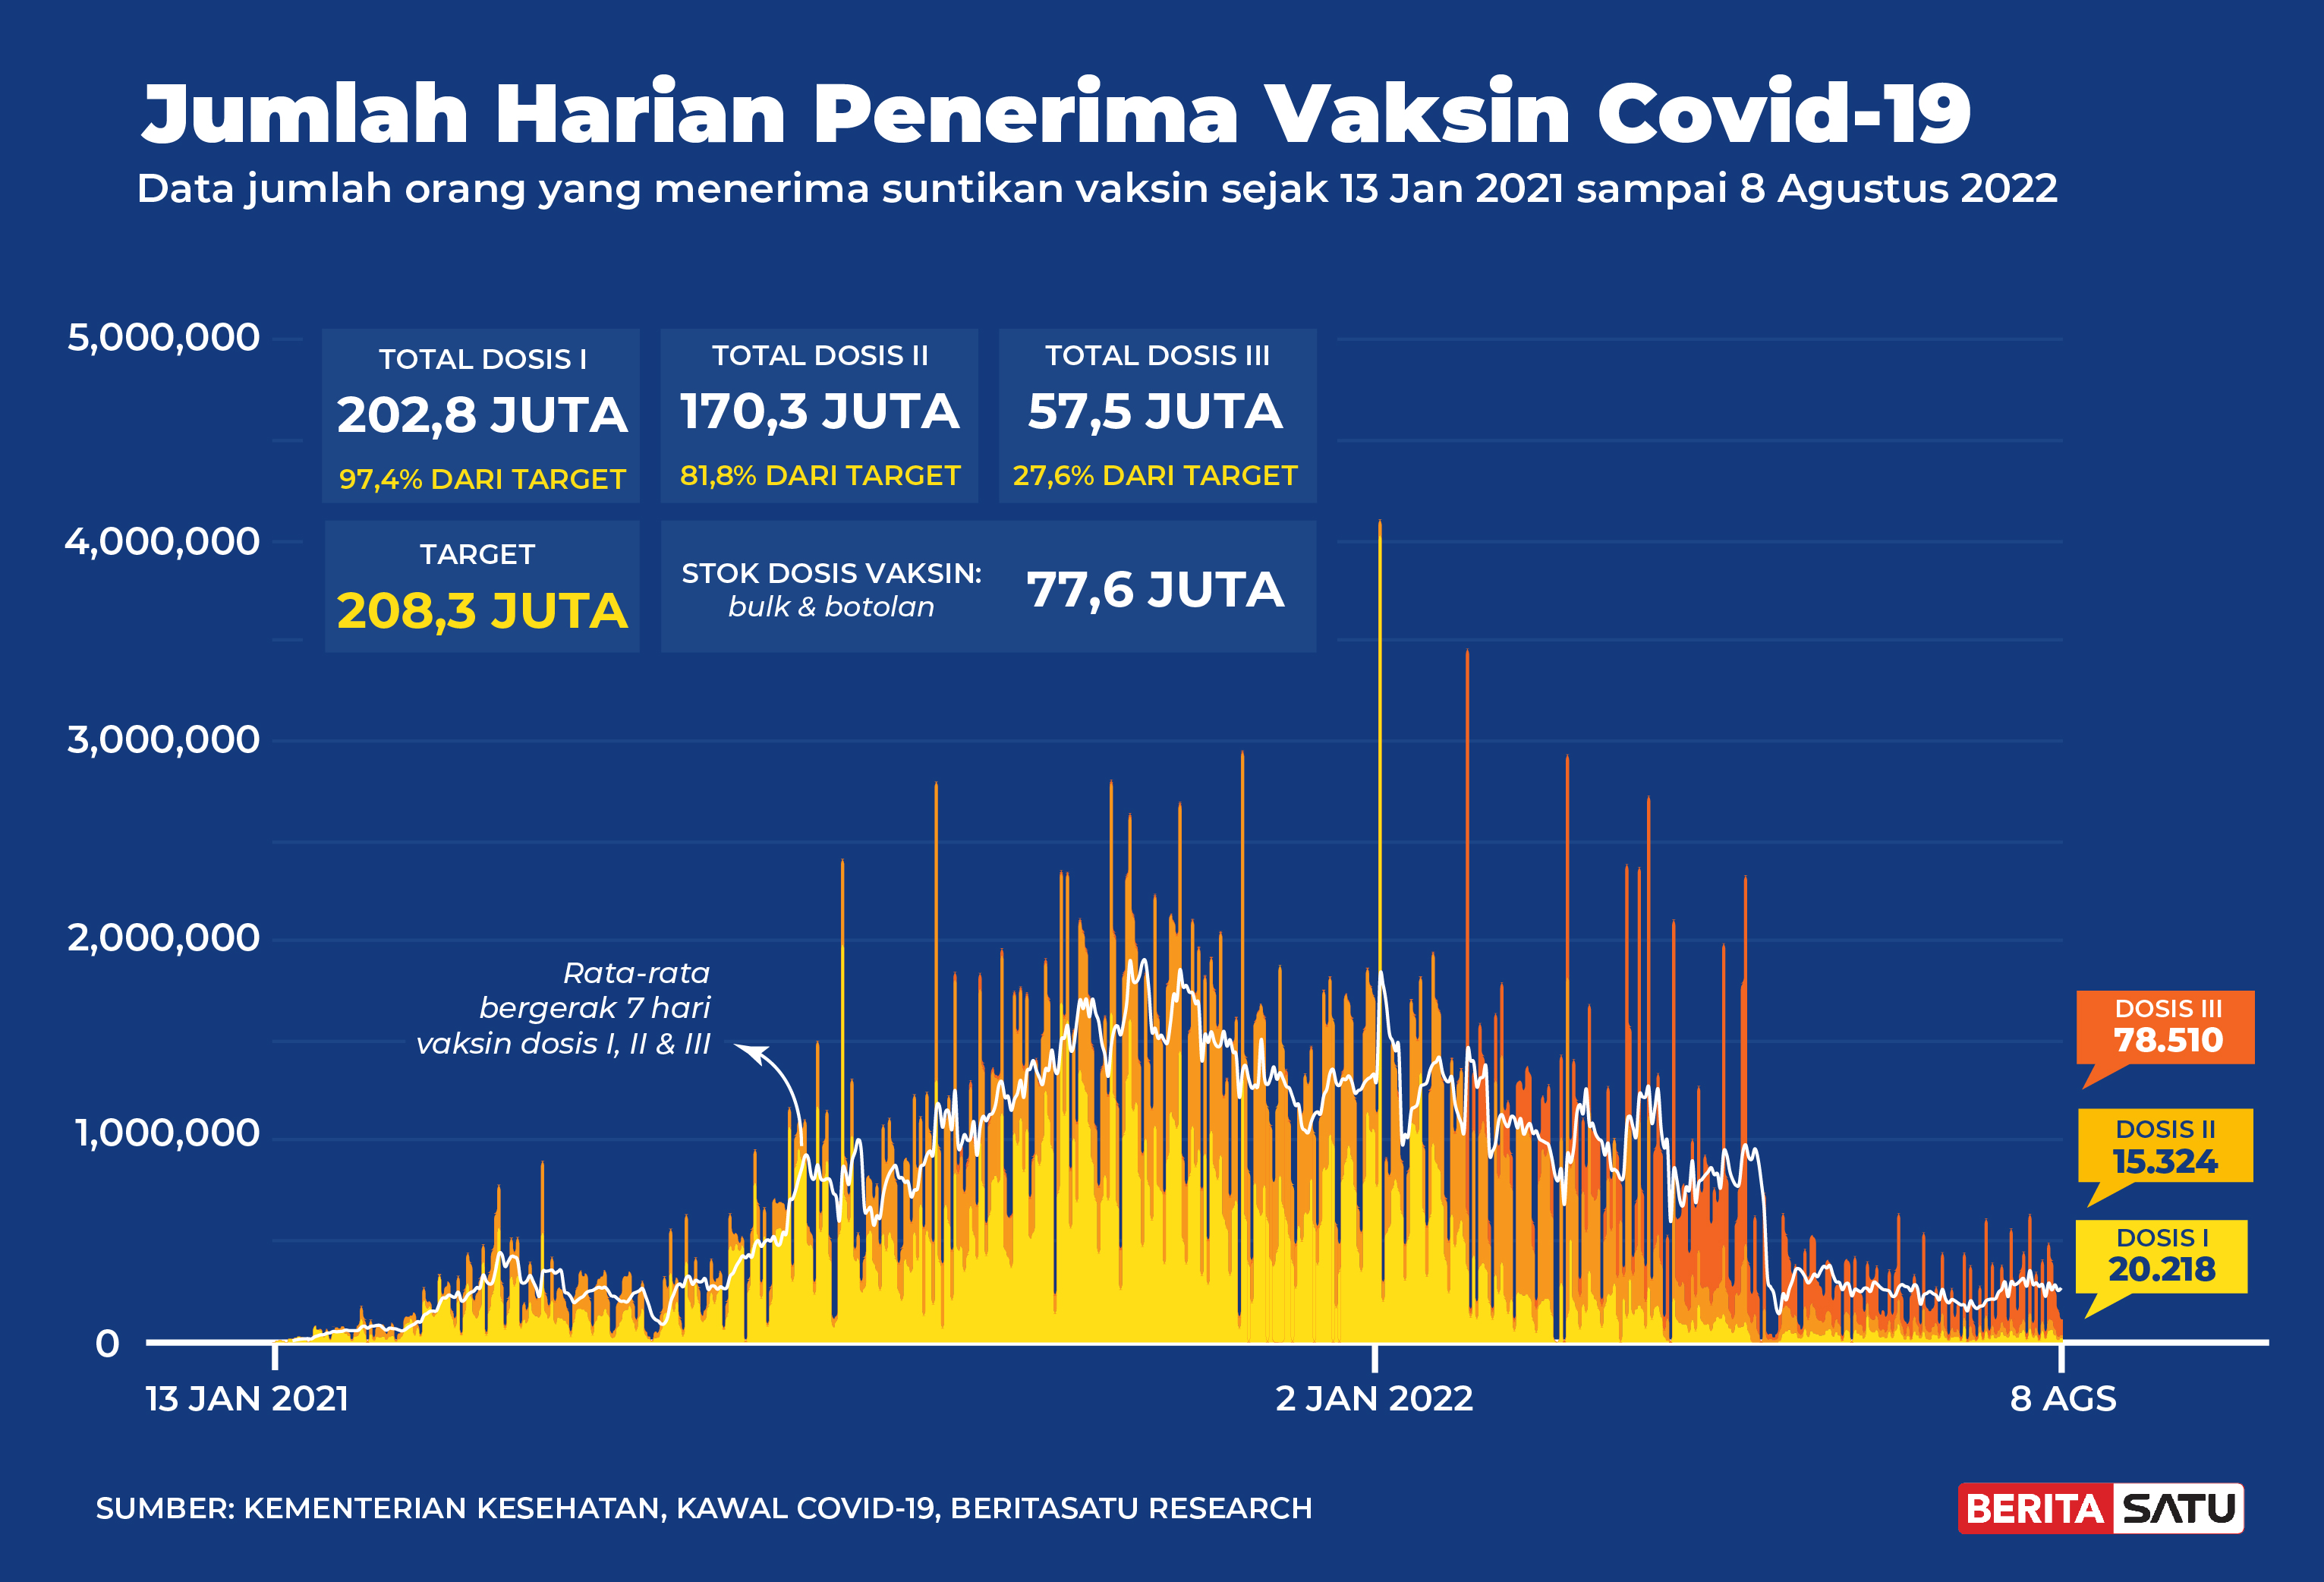 Penerima Vaksin Covid-19 di Indonesia sampai 8 Agustus 2022